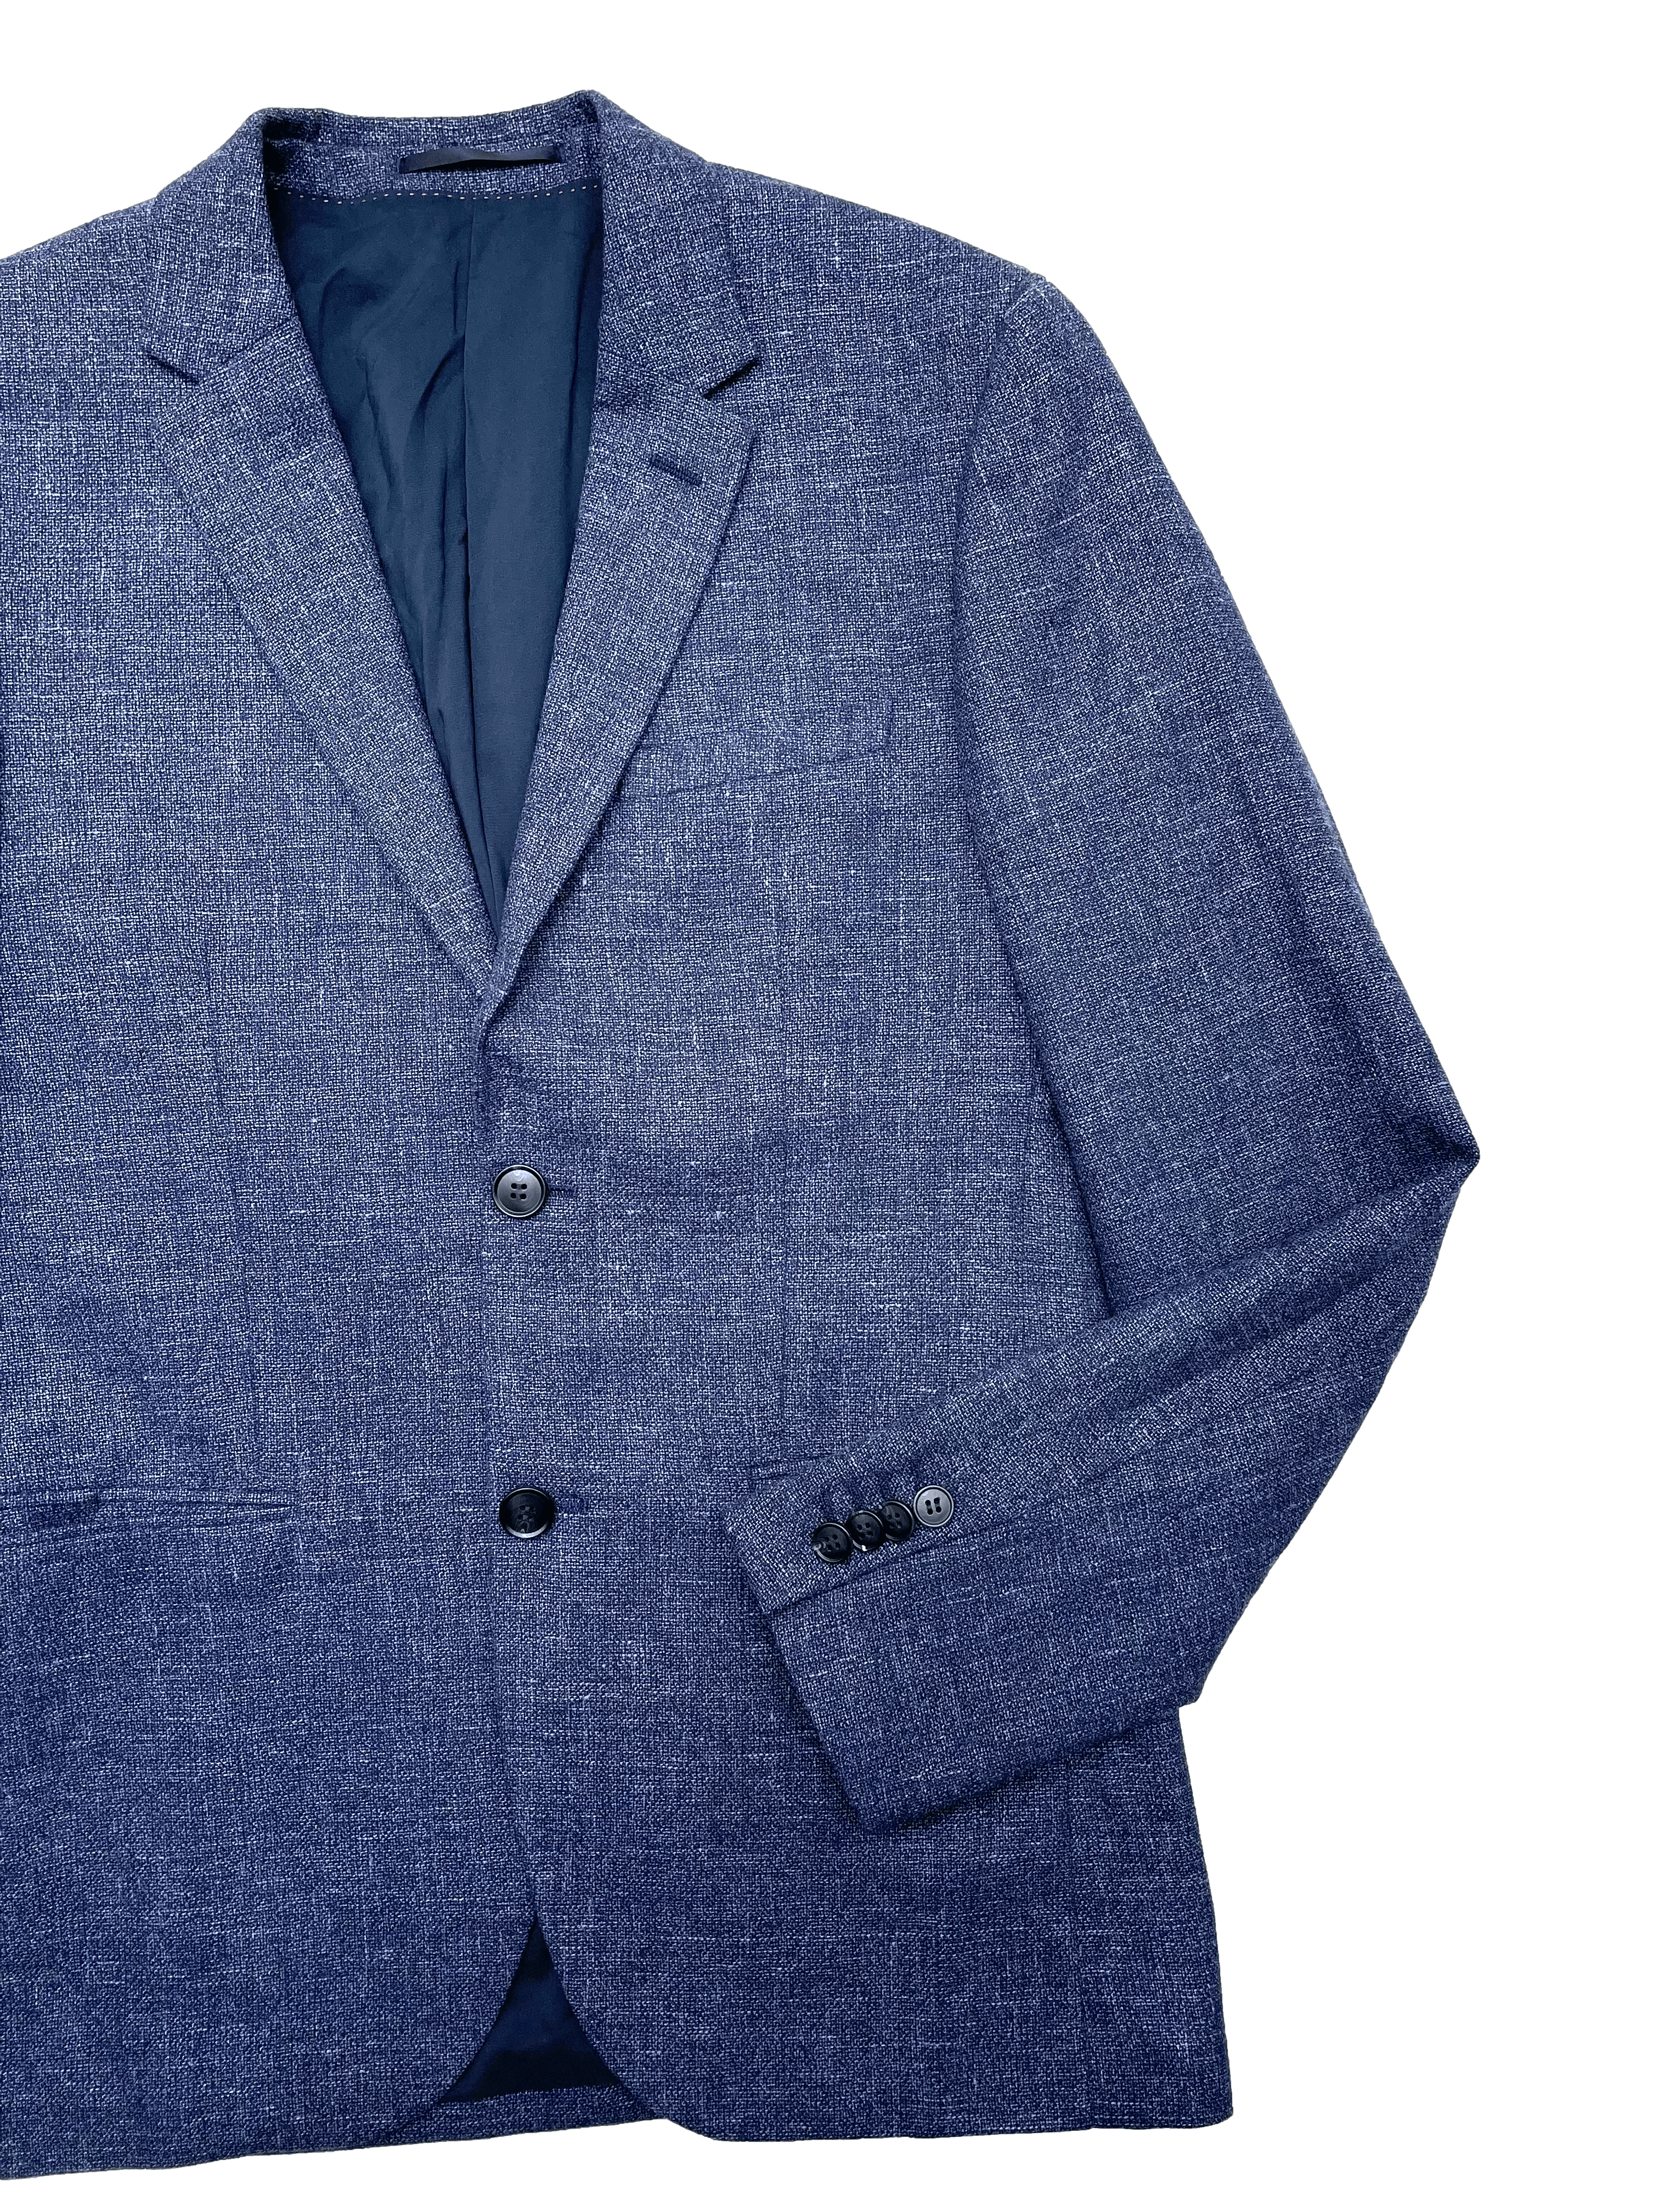 Blazer H&M azul jaspeado de tweed con mezcla de lana y lino, tiene forro, tres bolsillos, aberturas posteriores y botones de repuesto. Busto 100cm, Largo 70cm.